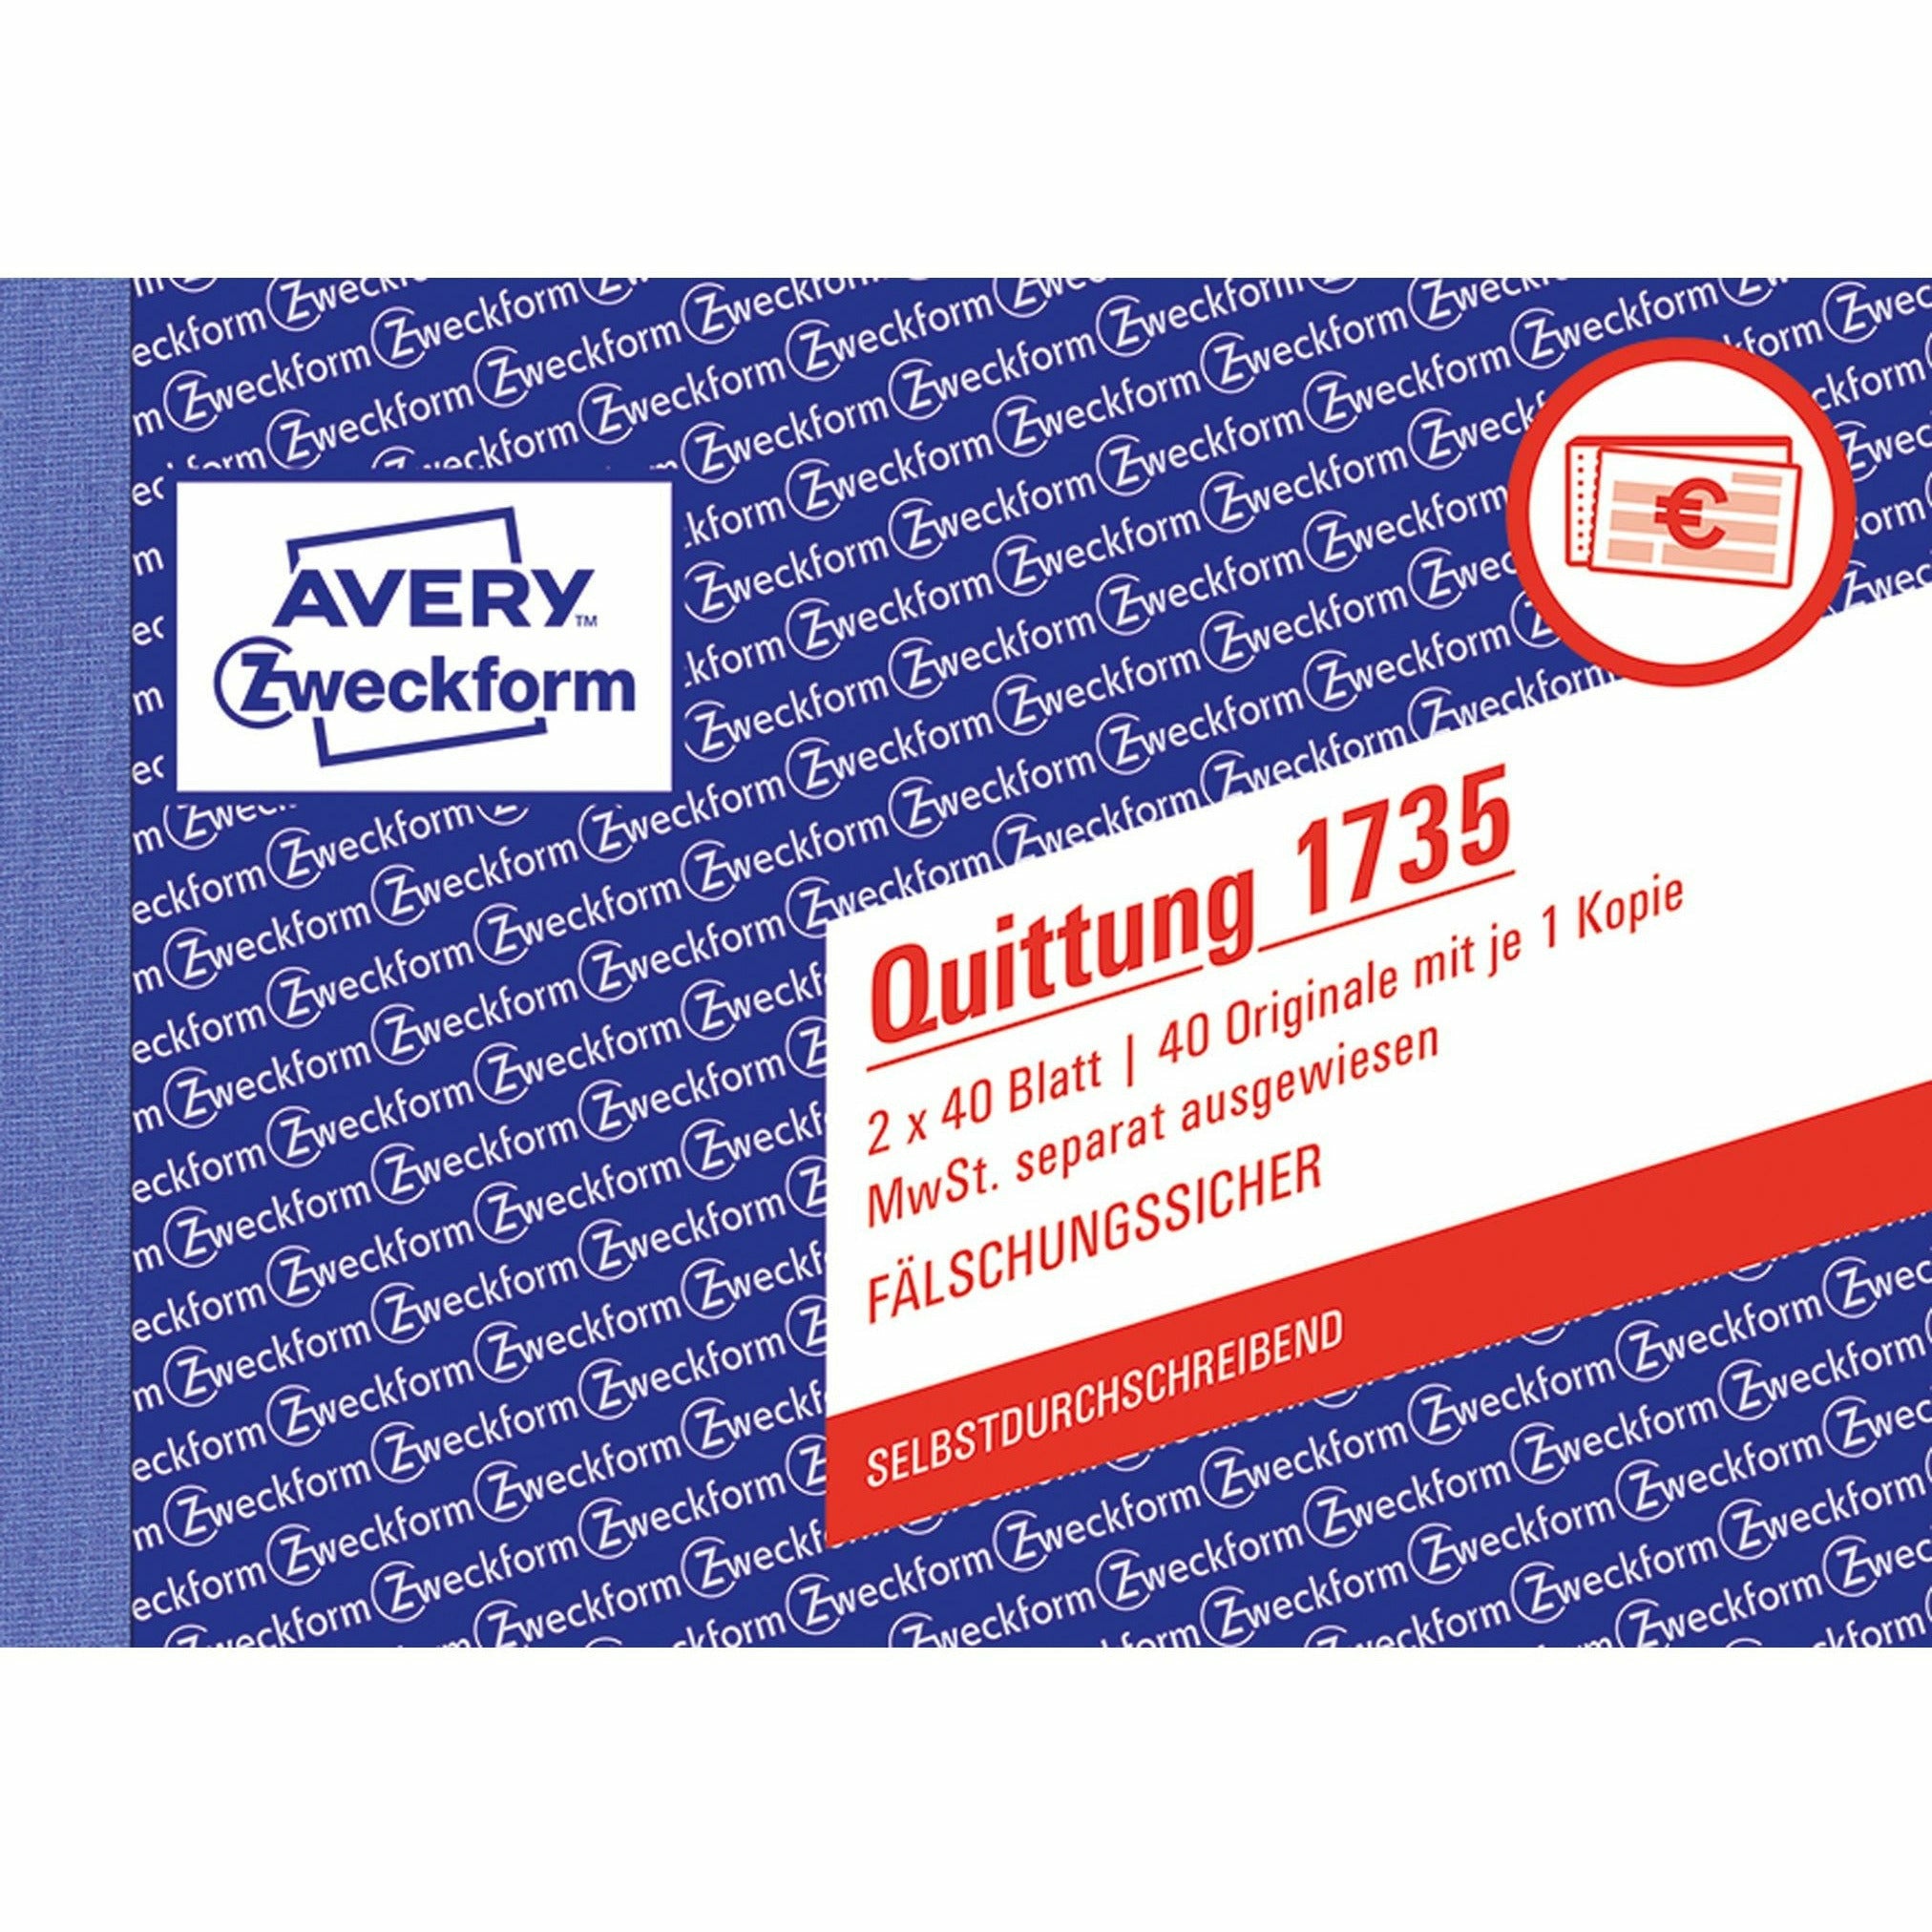 Avery-Zweckform | Quittung MwSt. separat ausgewiesen | 1735